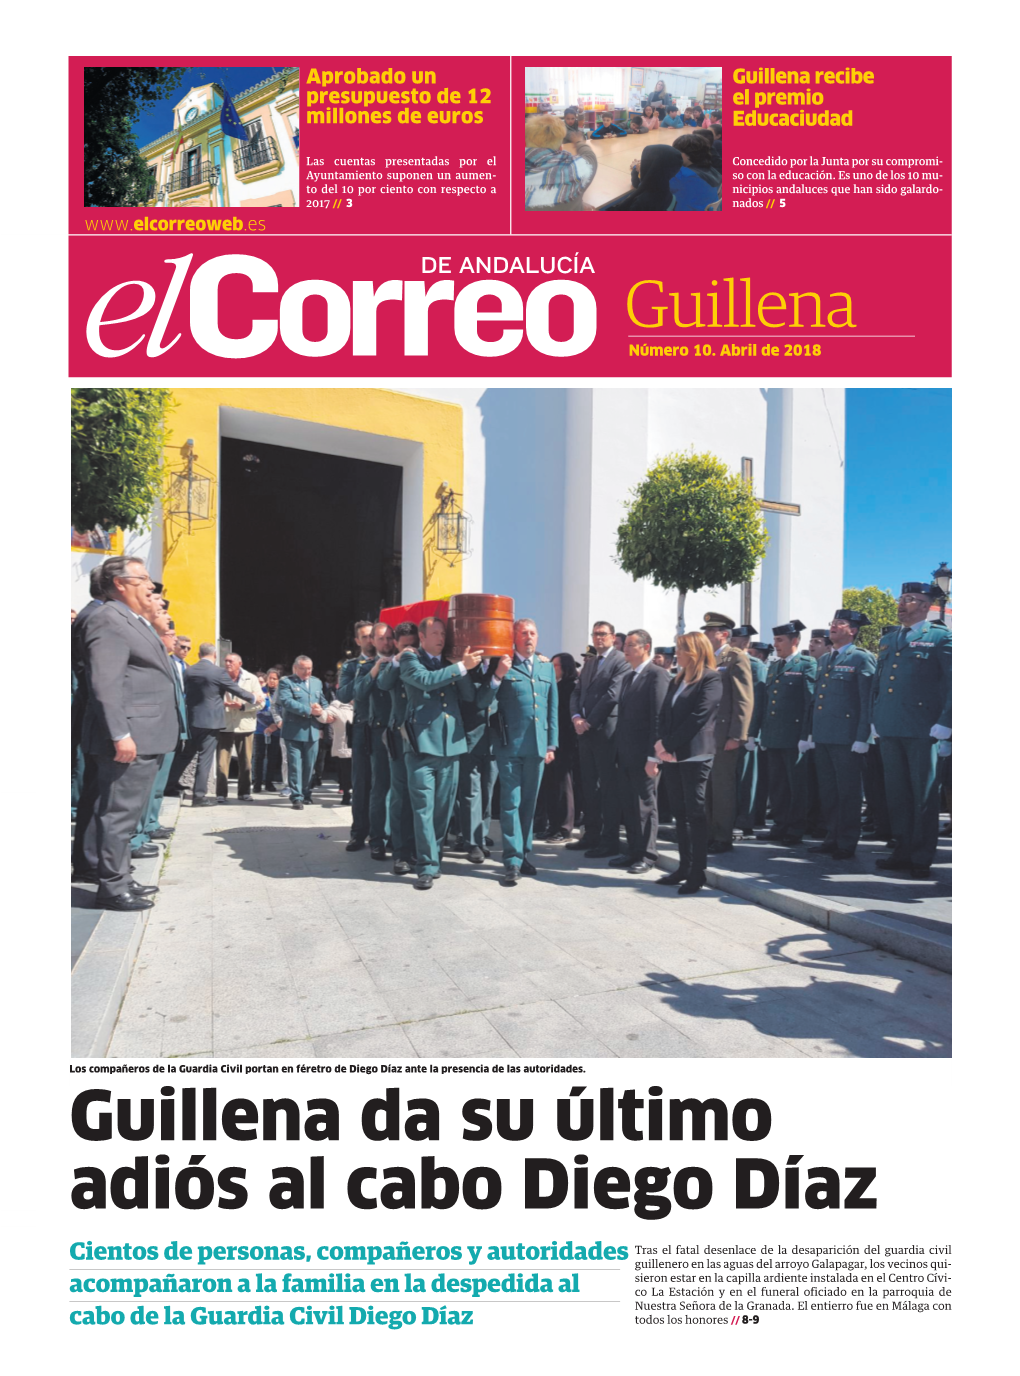 Guillena Da Su Último Adiós Al Cabo Diego Díaz